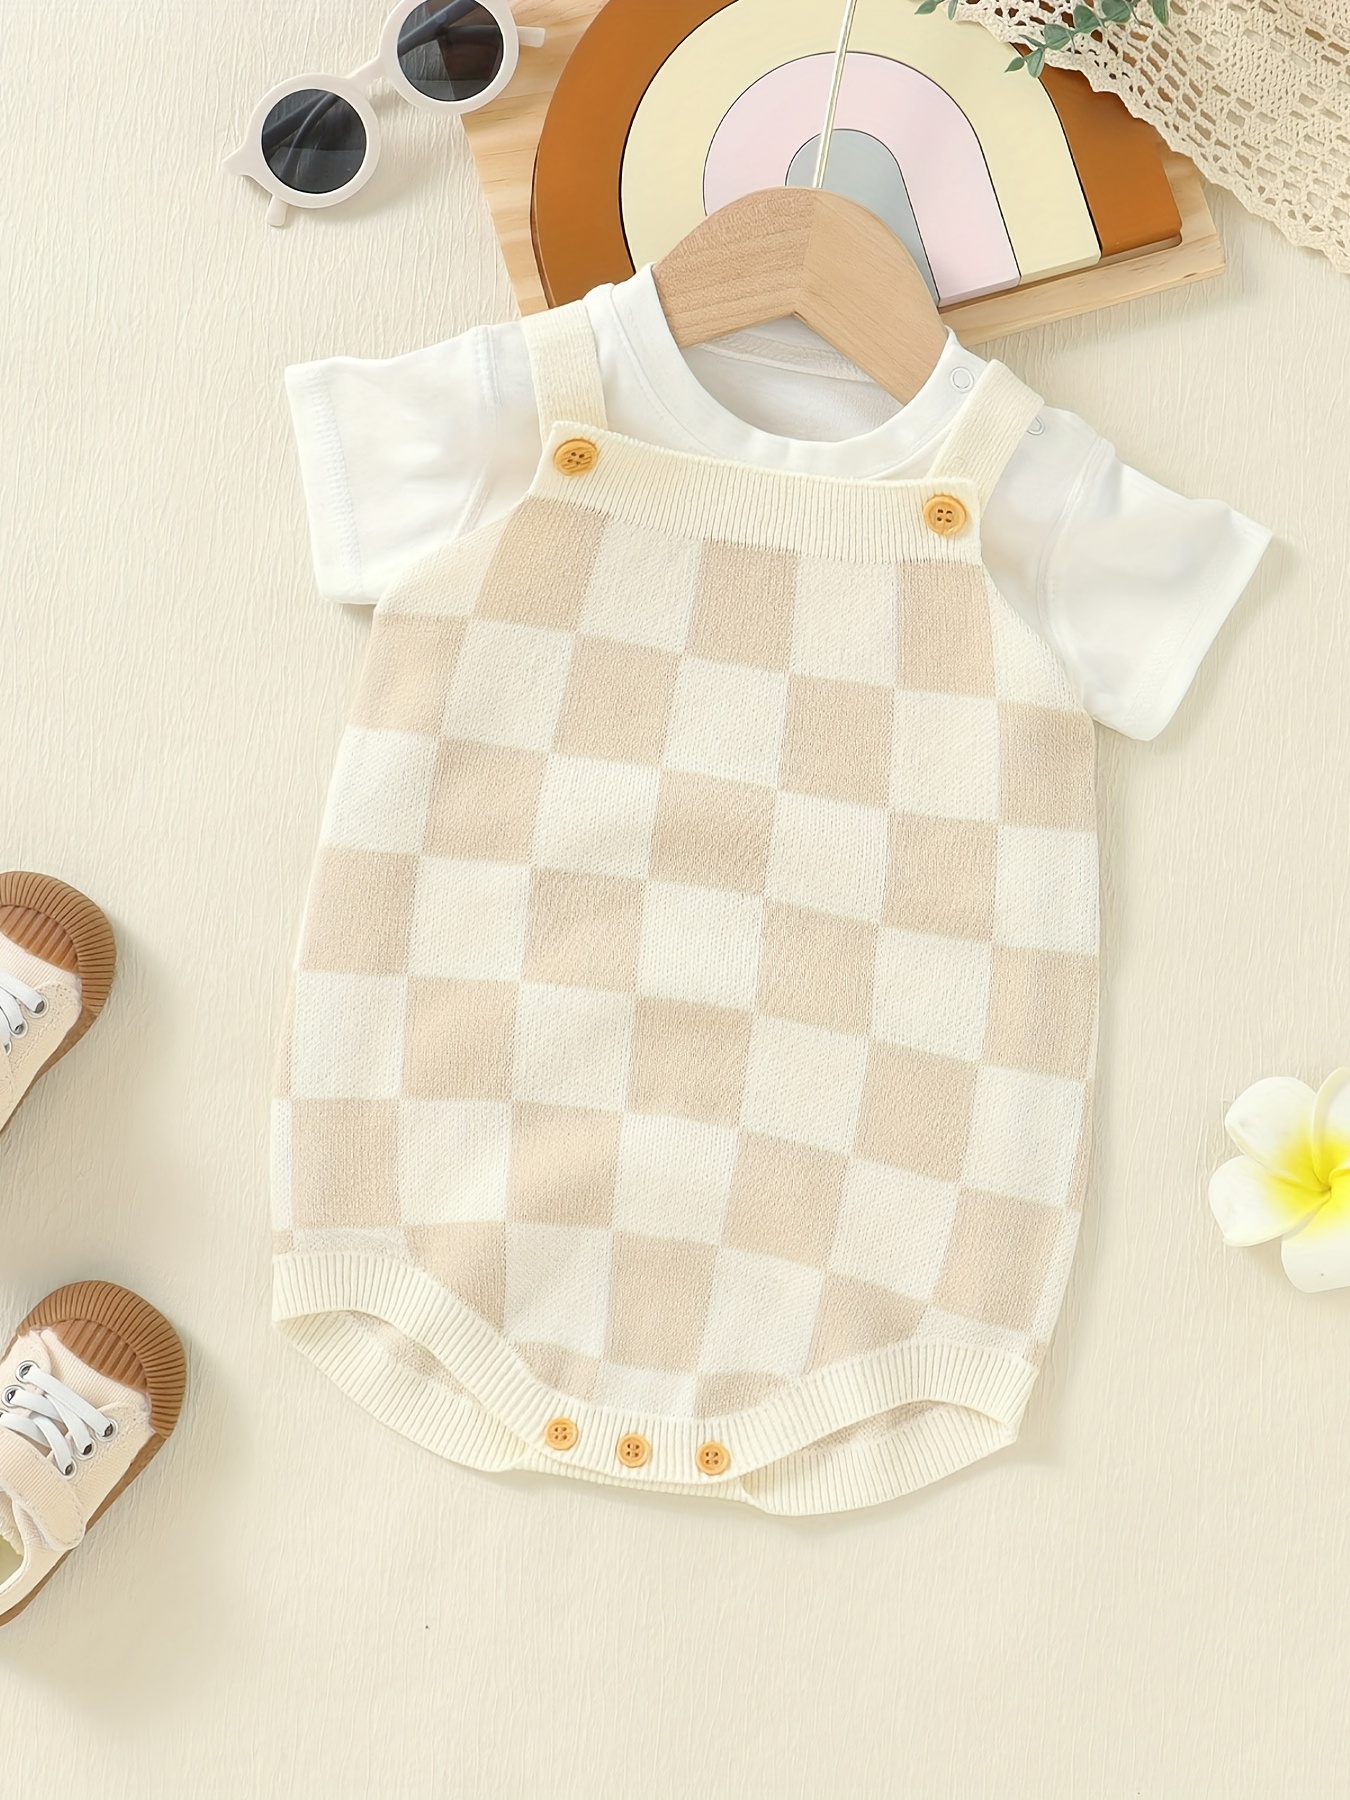 Louis Vuitton Baby Girl Clothes